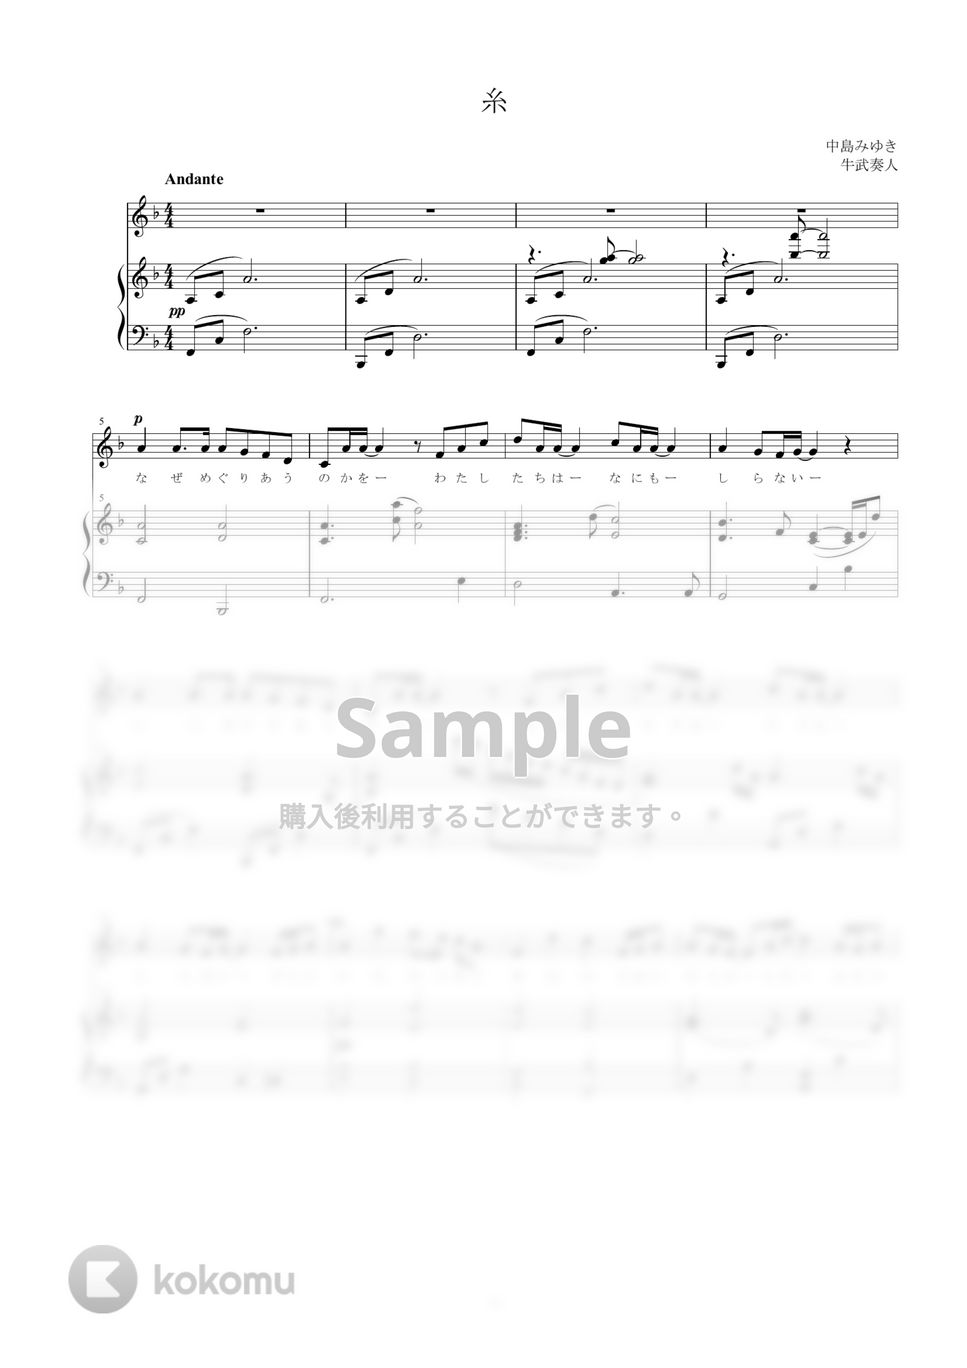 中島みゆき - 糸 (声楽アレンジ) by 牛武奏人